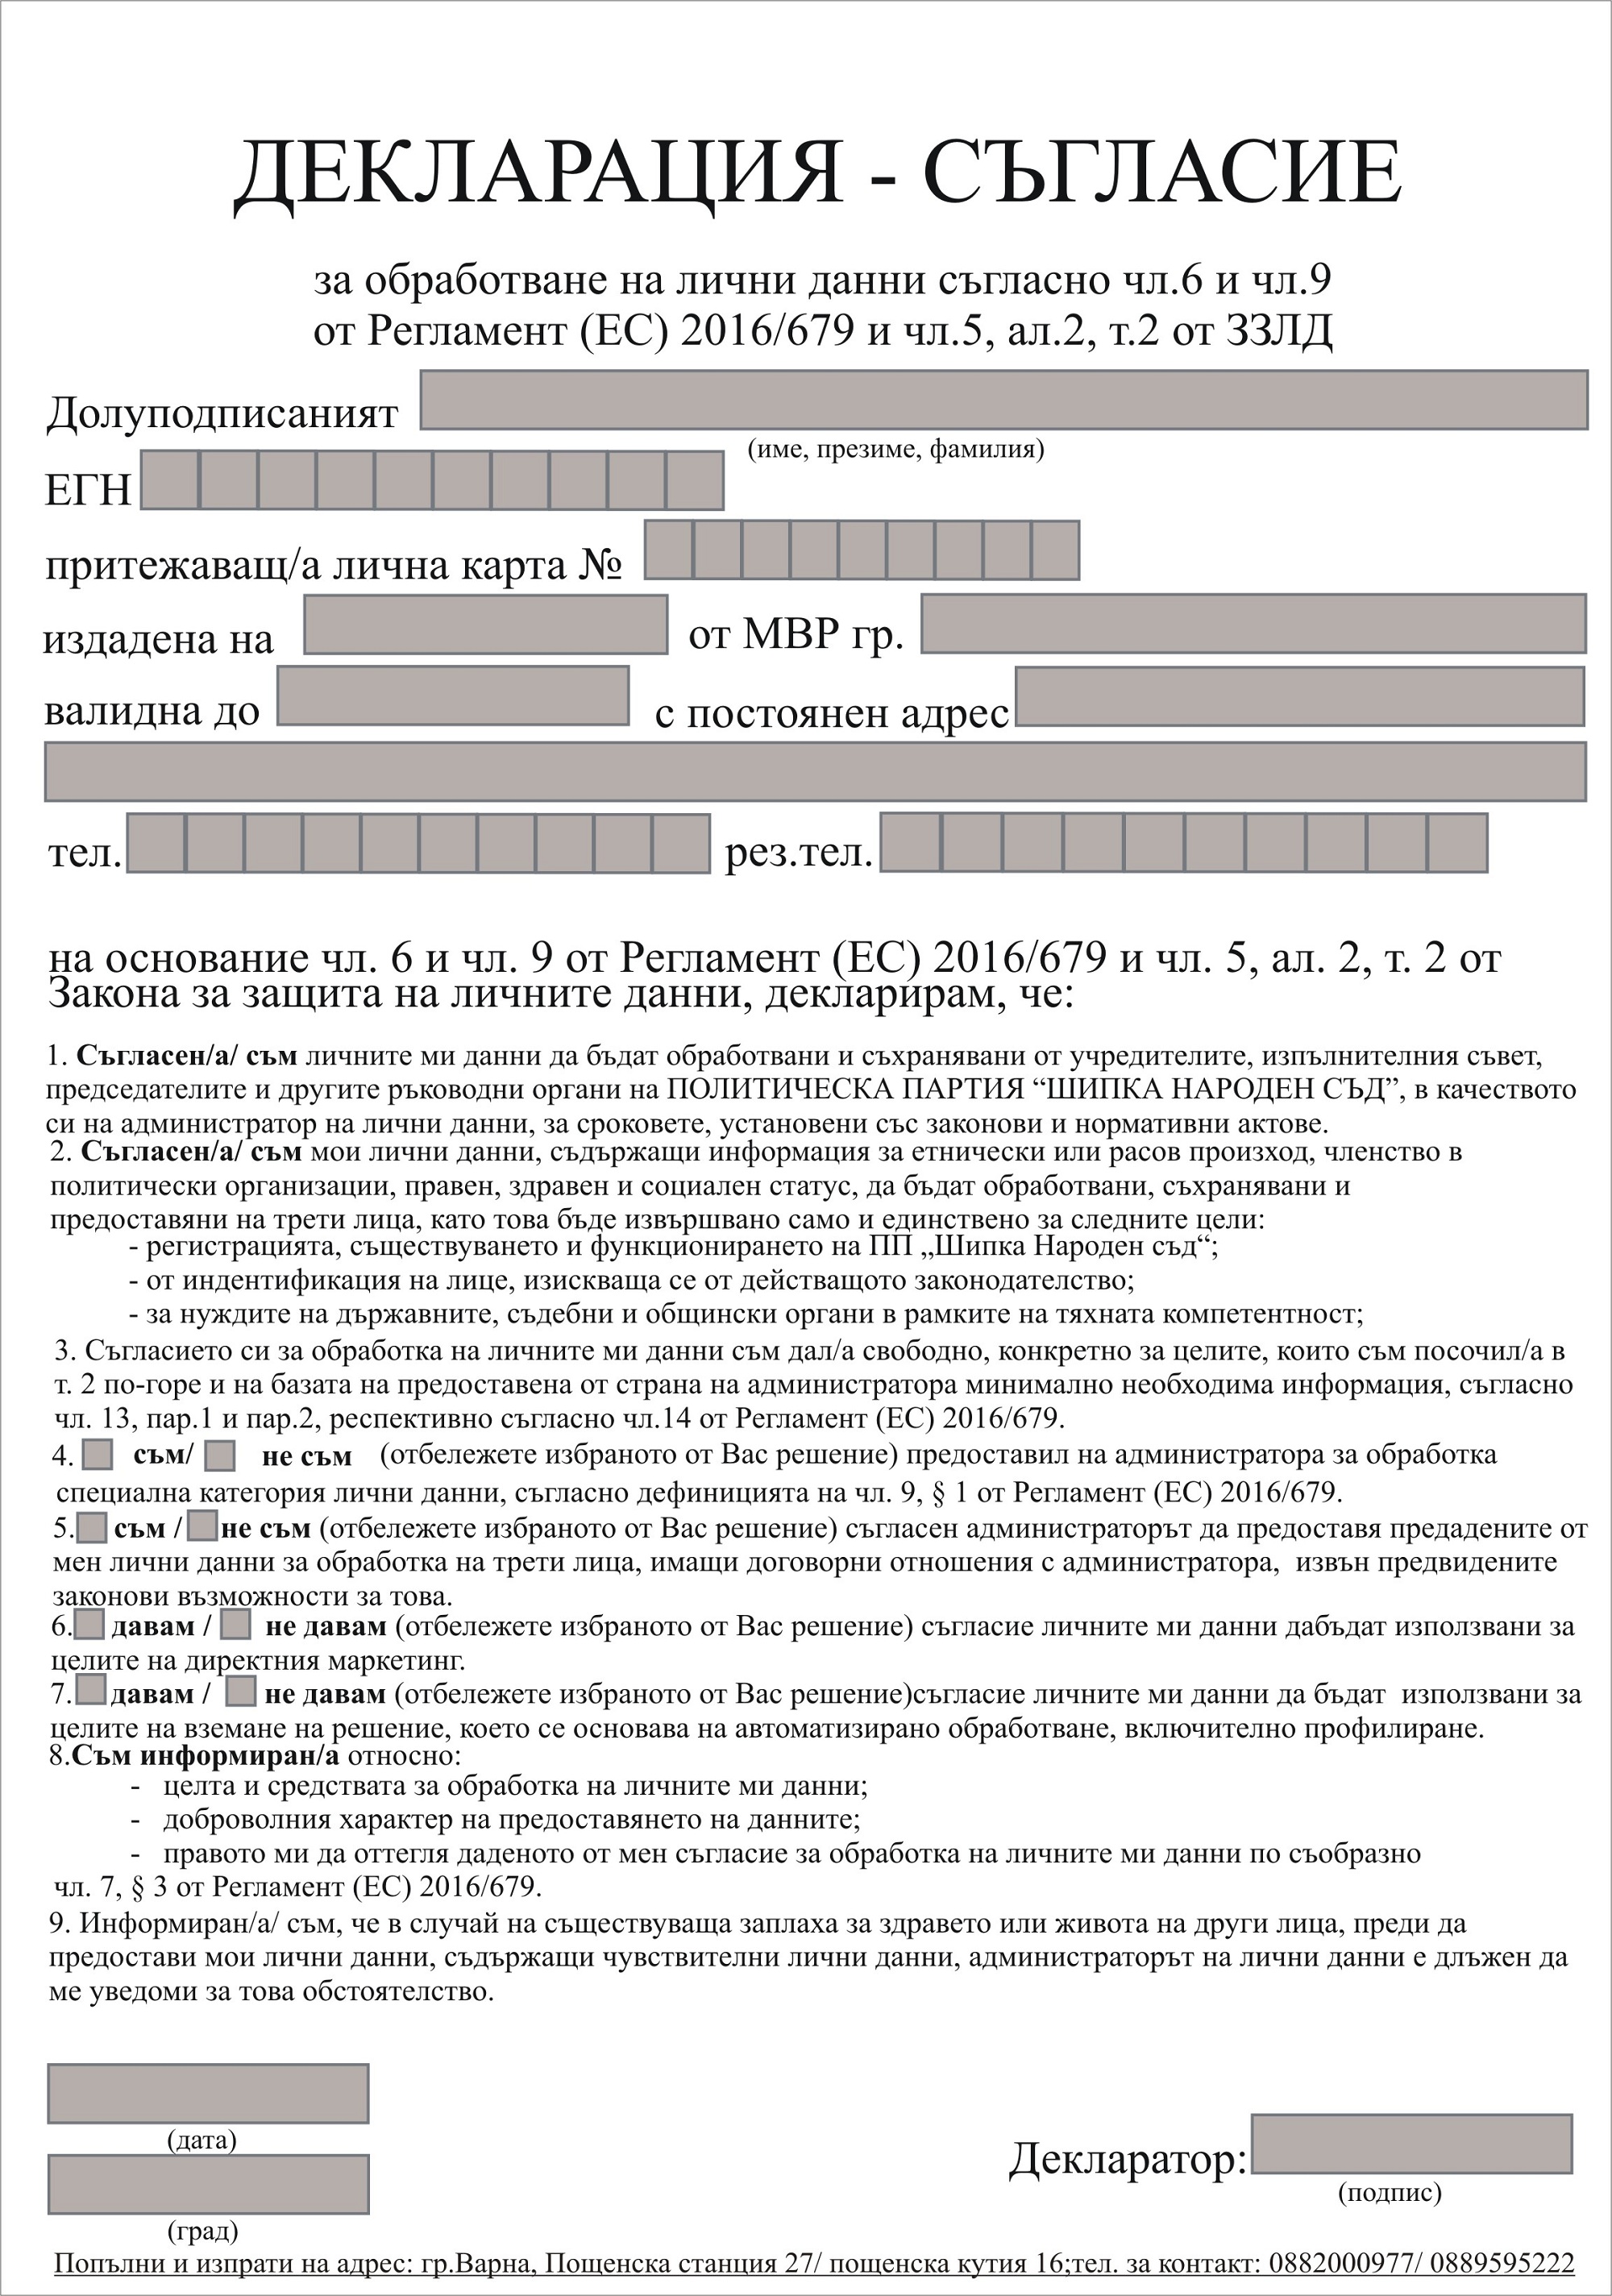 ШИПКА НАРОДЕН СЪД - Декларация - Лични данни